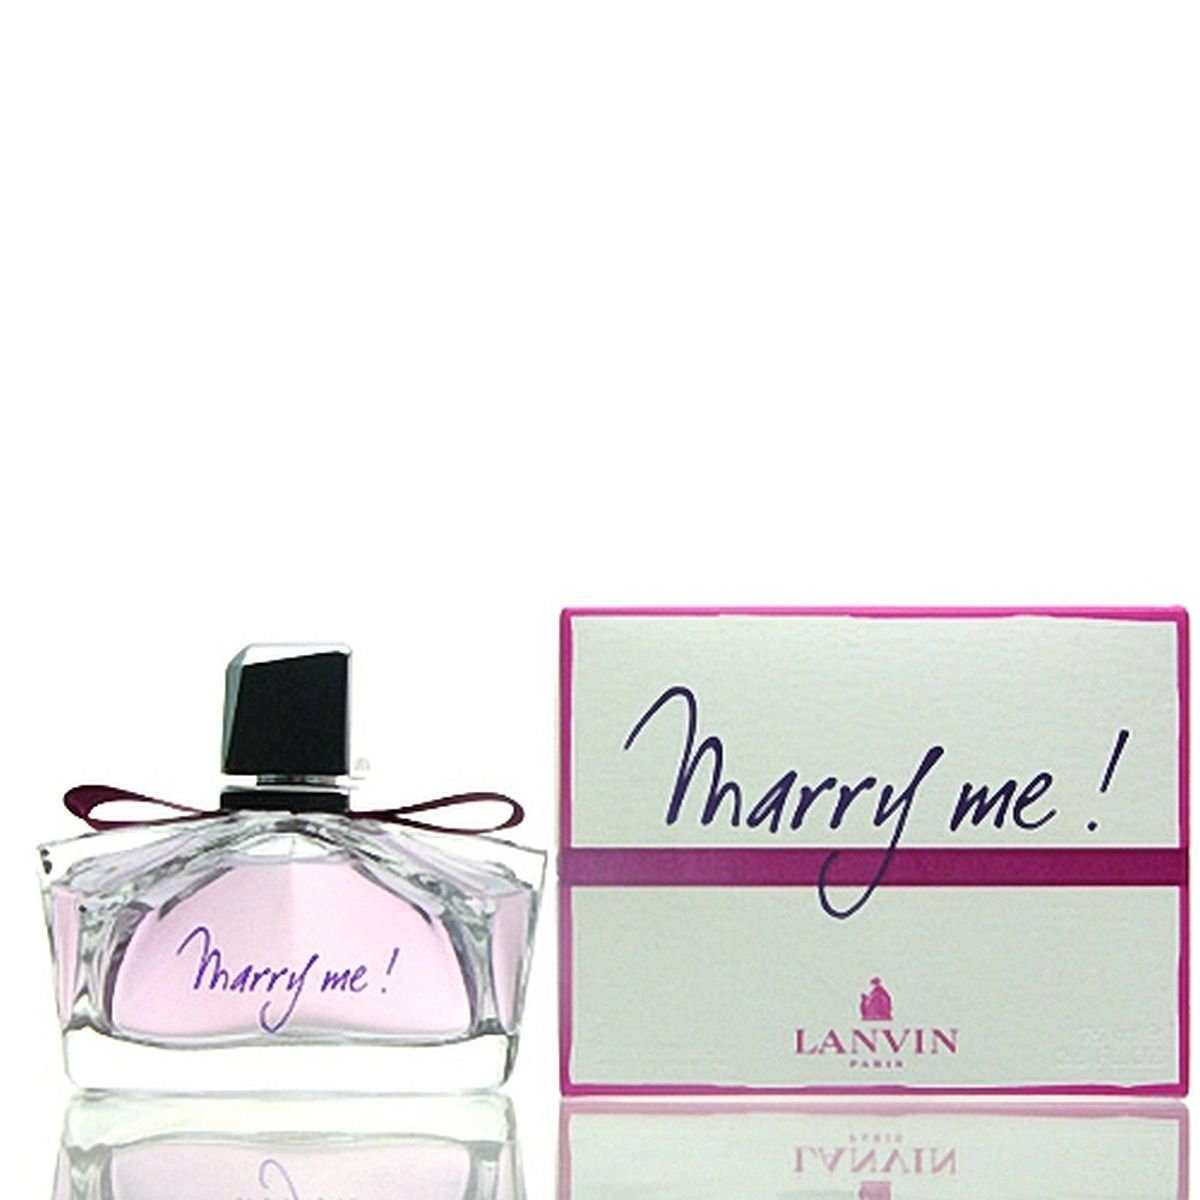 Me! de 75 Marry Parfum Eau ml LANVIN Eau de Parfum Lanvin